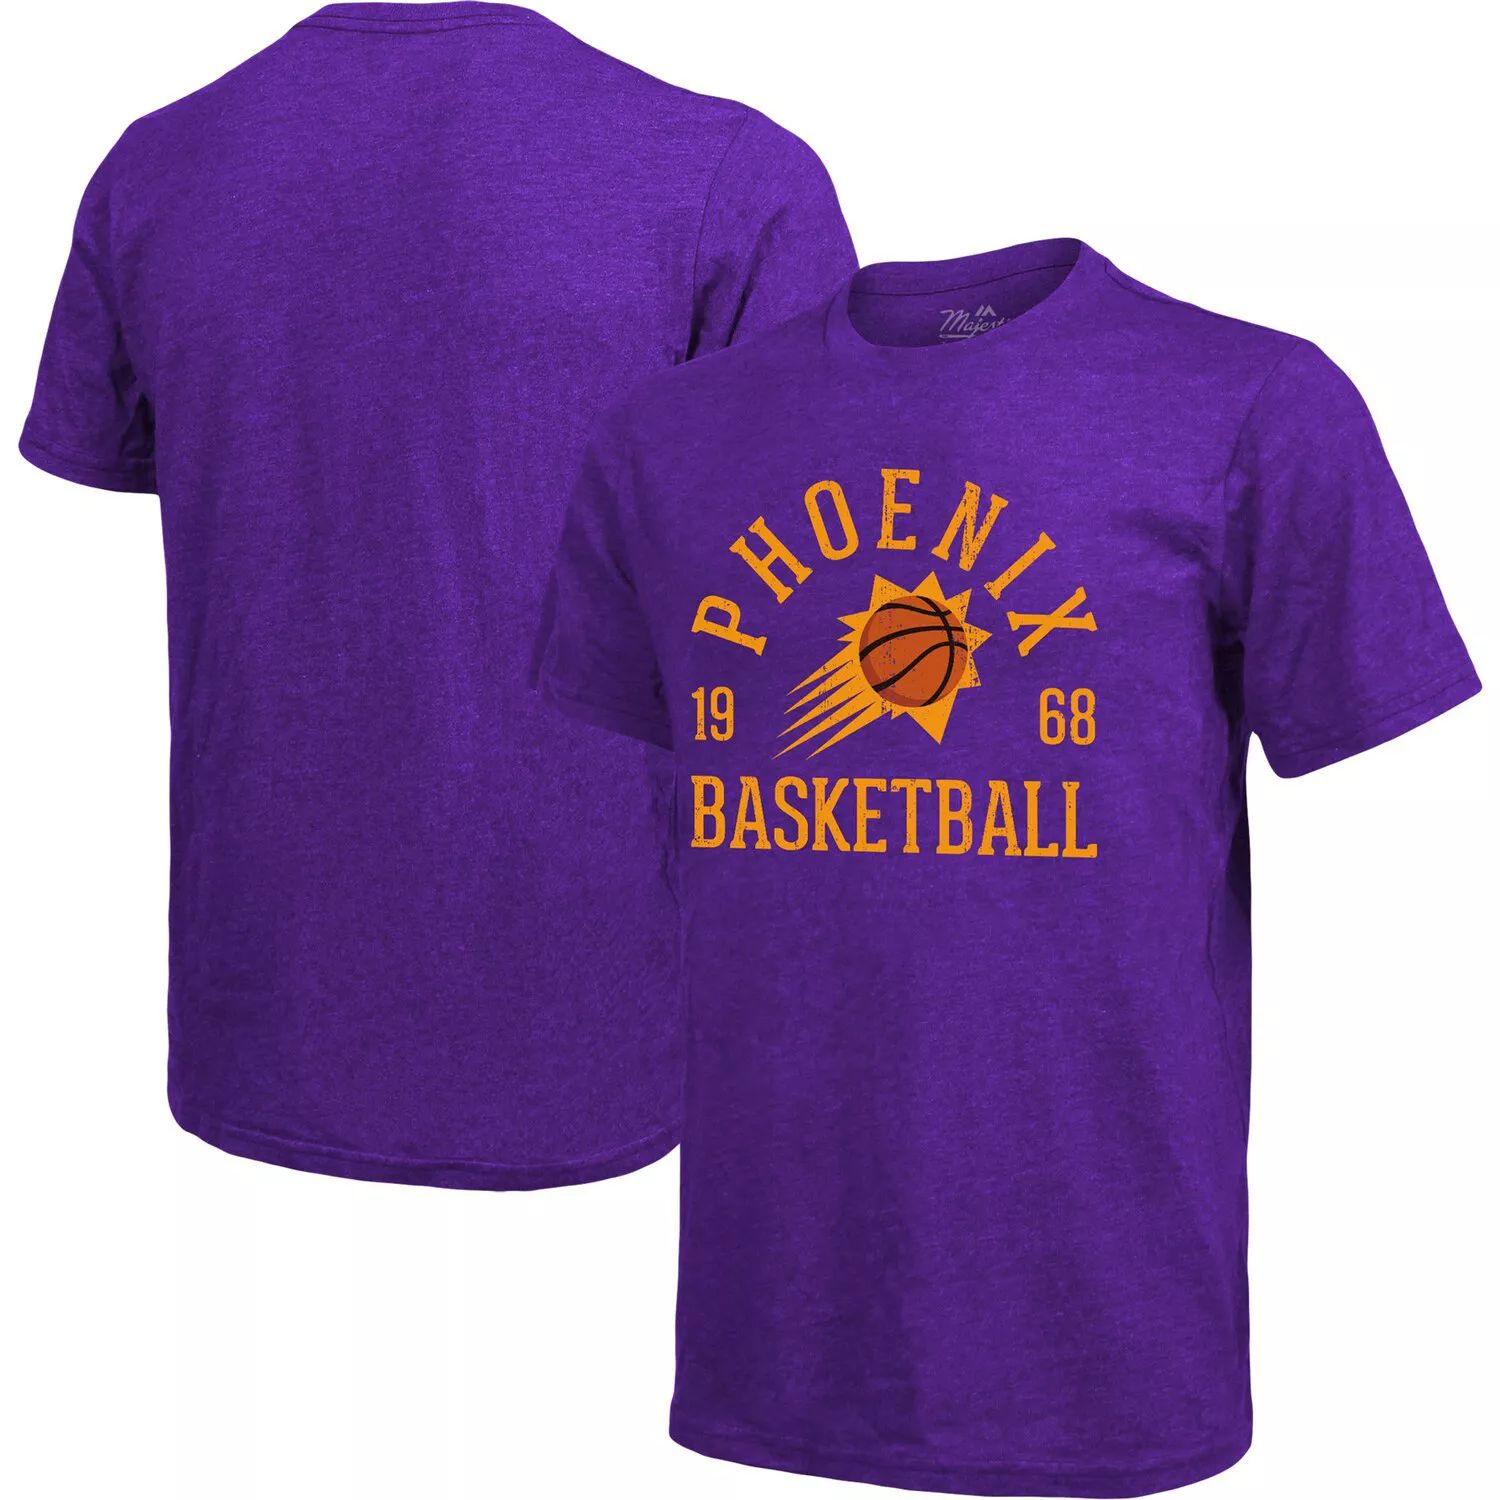 Мужская фиолетовая футболка с нитками Phoenix Suns Ball Hog Tri-Blend Majestic